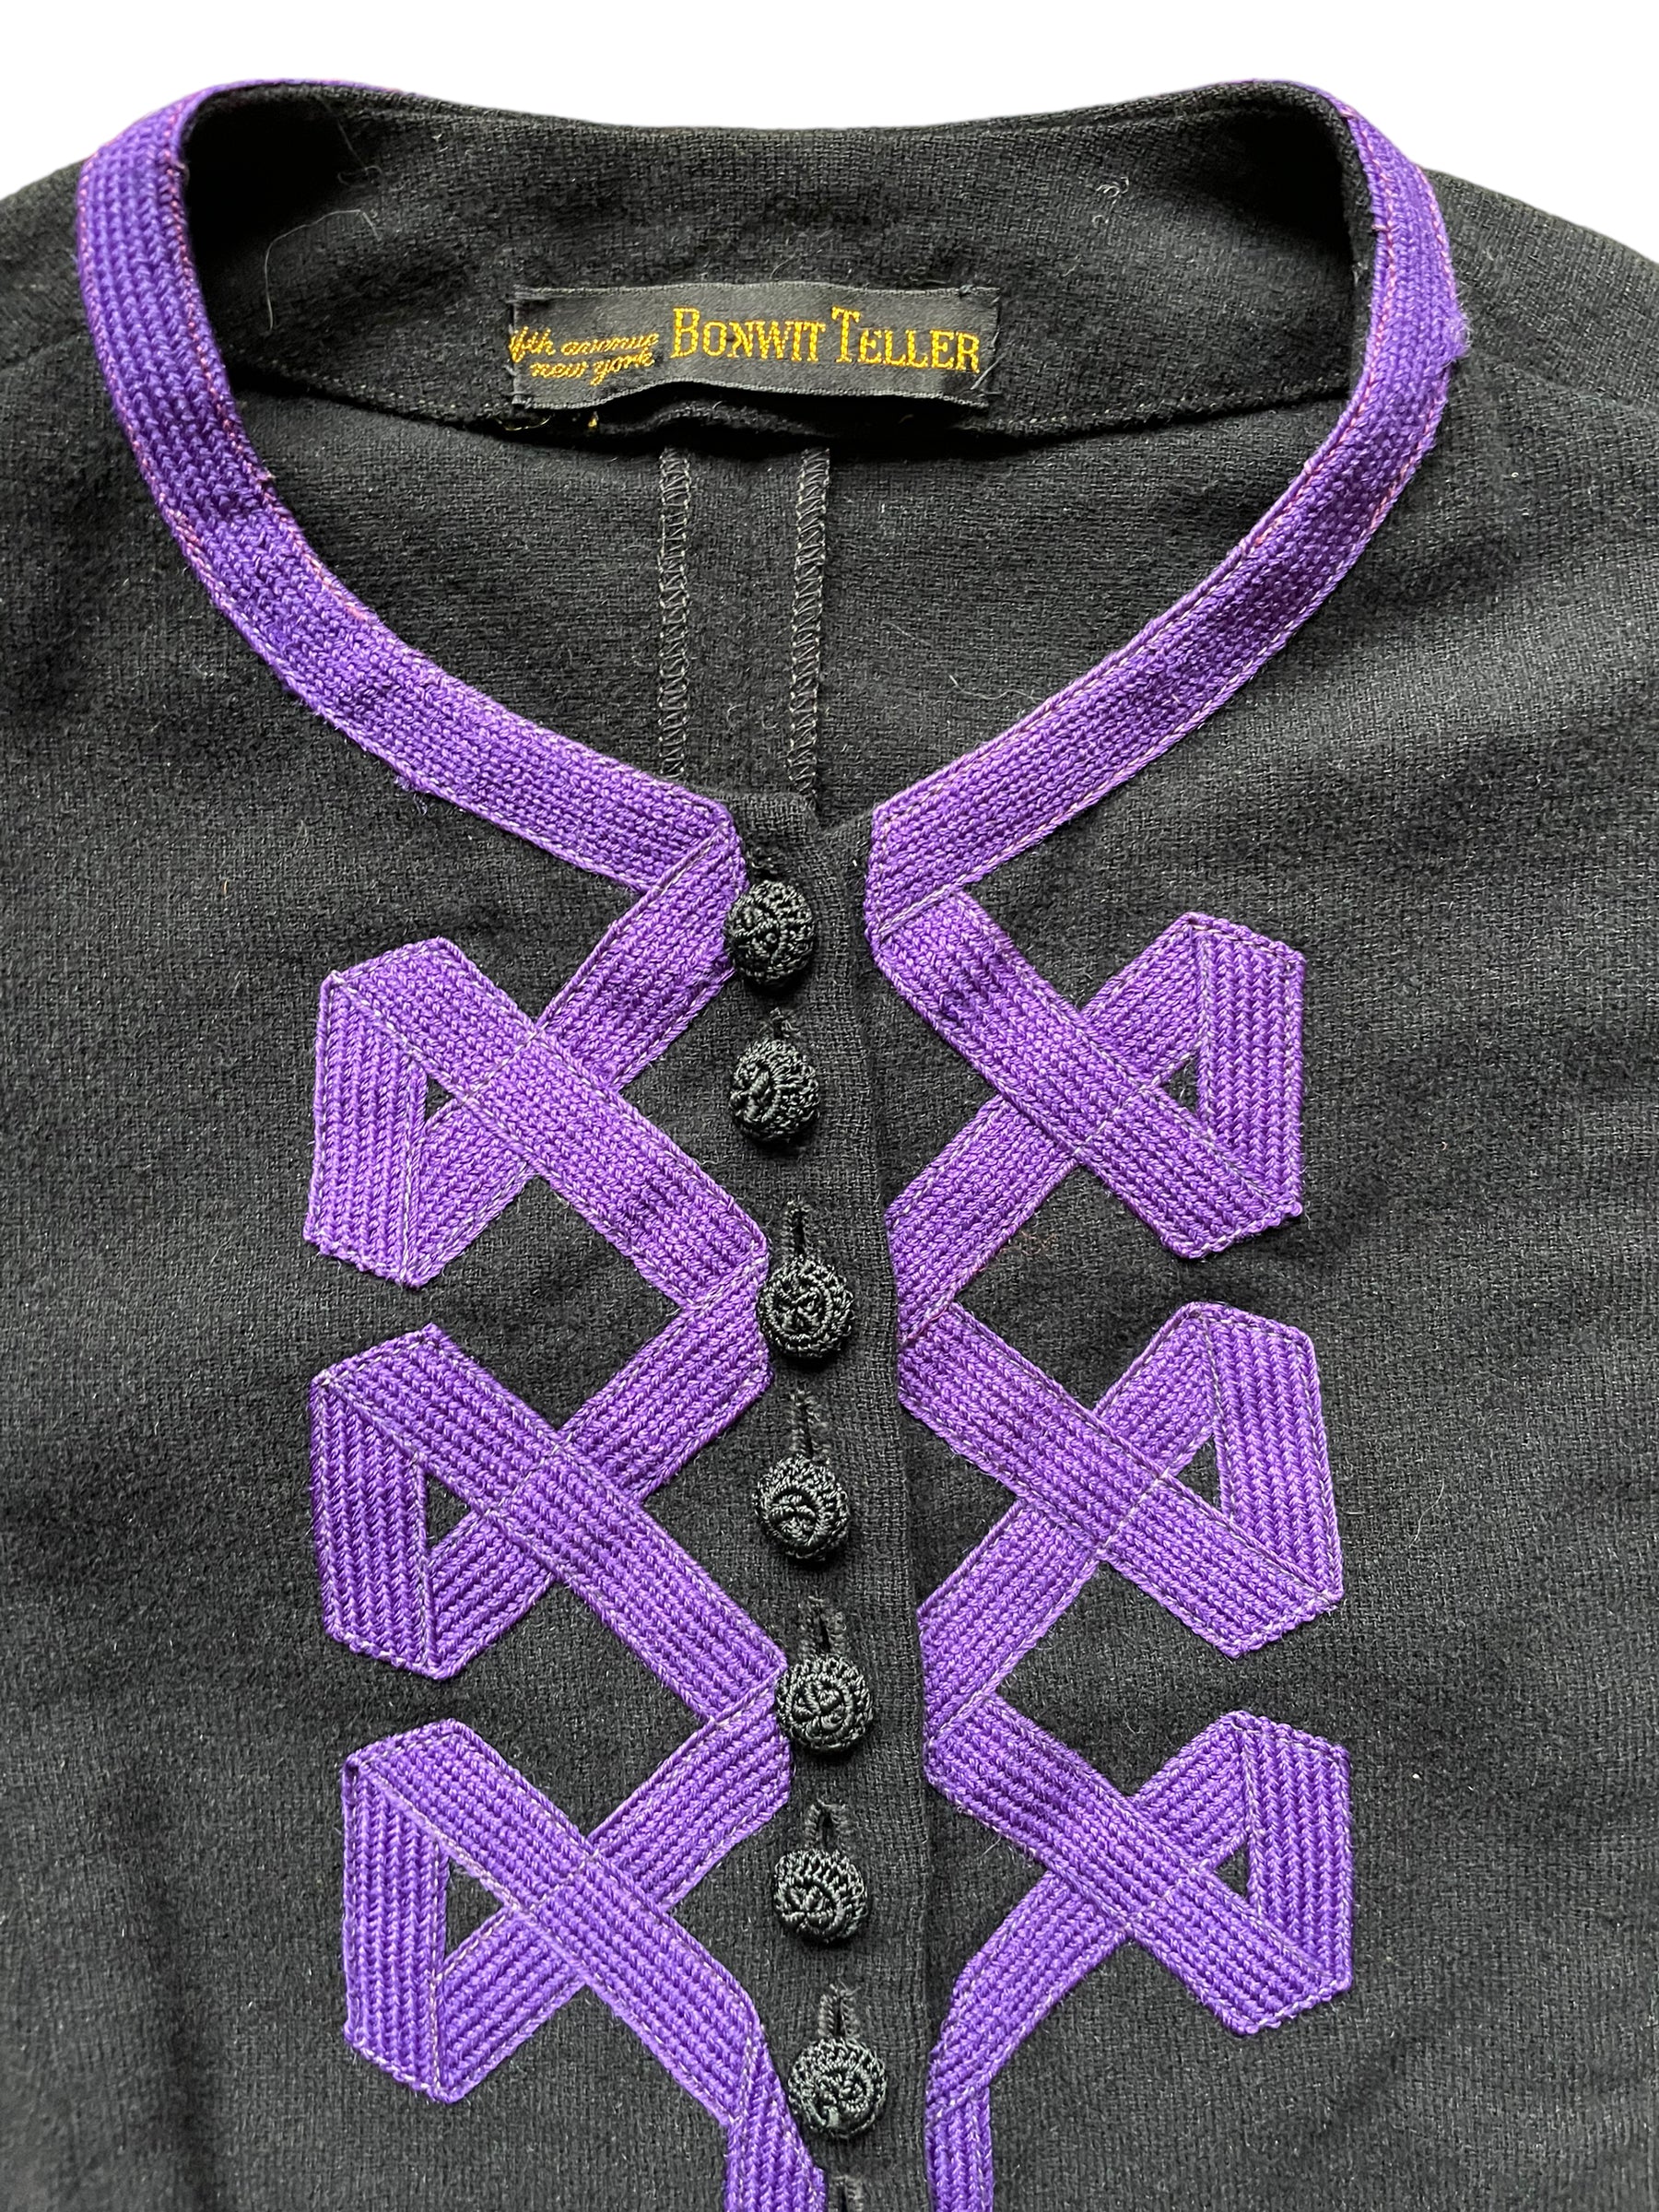 Collar detalis of Vintage 1940s Bonwit Teller Wool Jacket | Seattle Ladies Vintage | Barn Owl Vintage Seattle